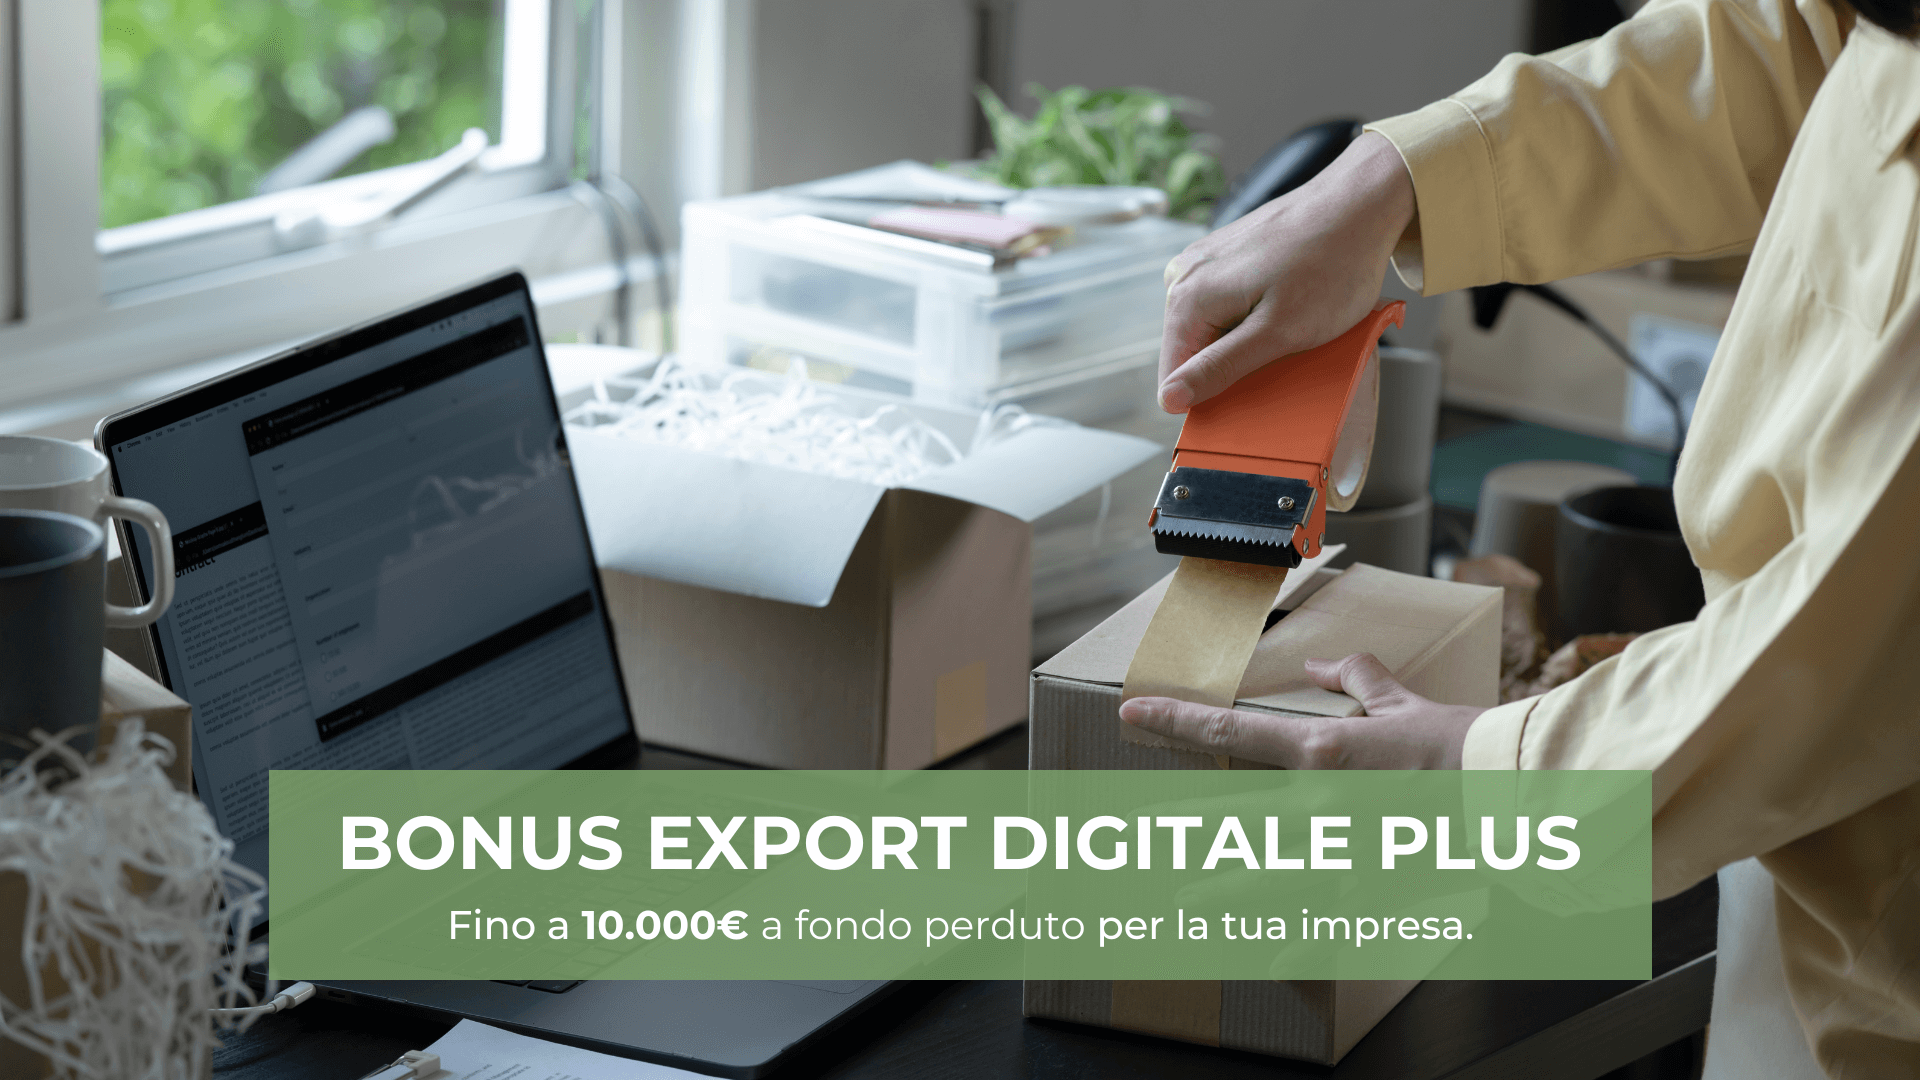 Approfitta del Bonus Export Digitale Plus: e-commerce, siti web e digital marketing per la tua azienda.